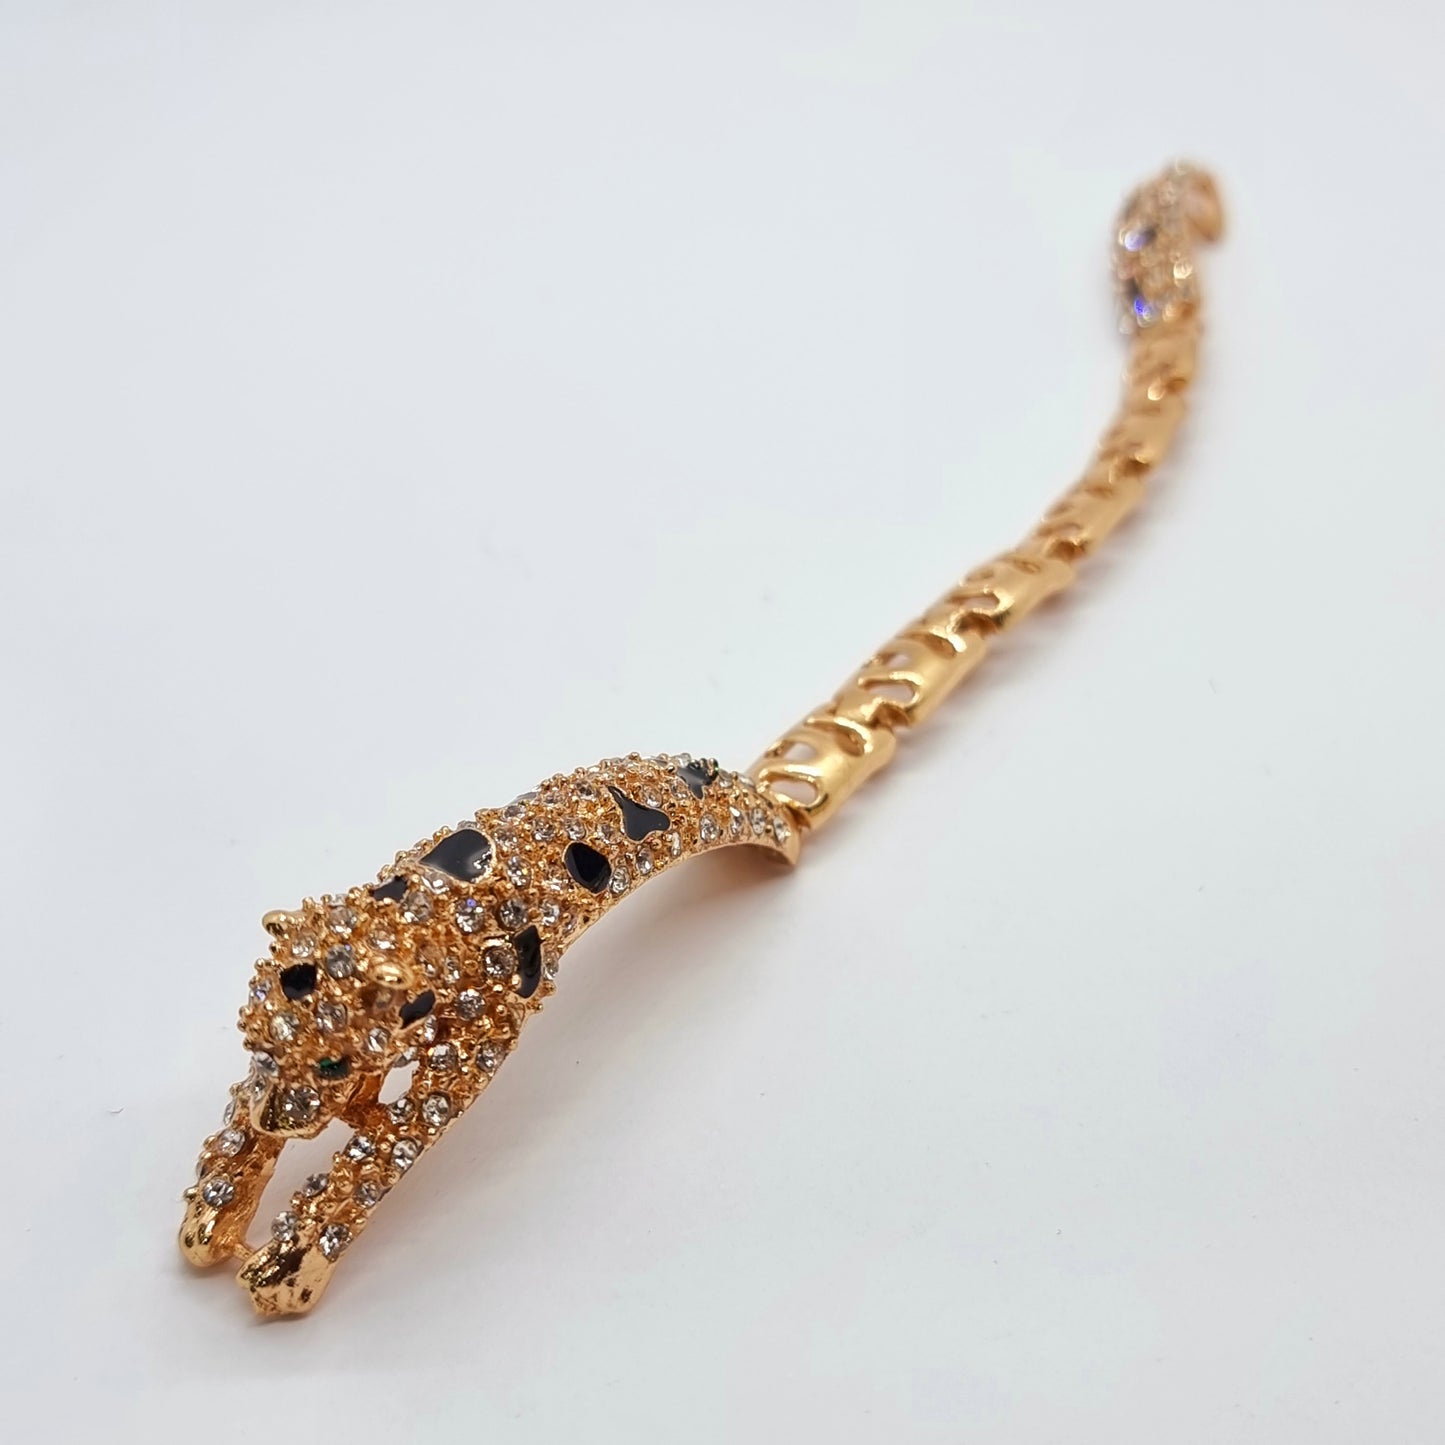 Rhinestone Cheetah Bracelet